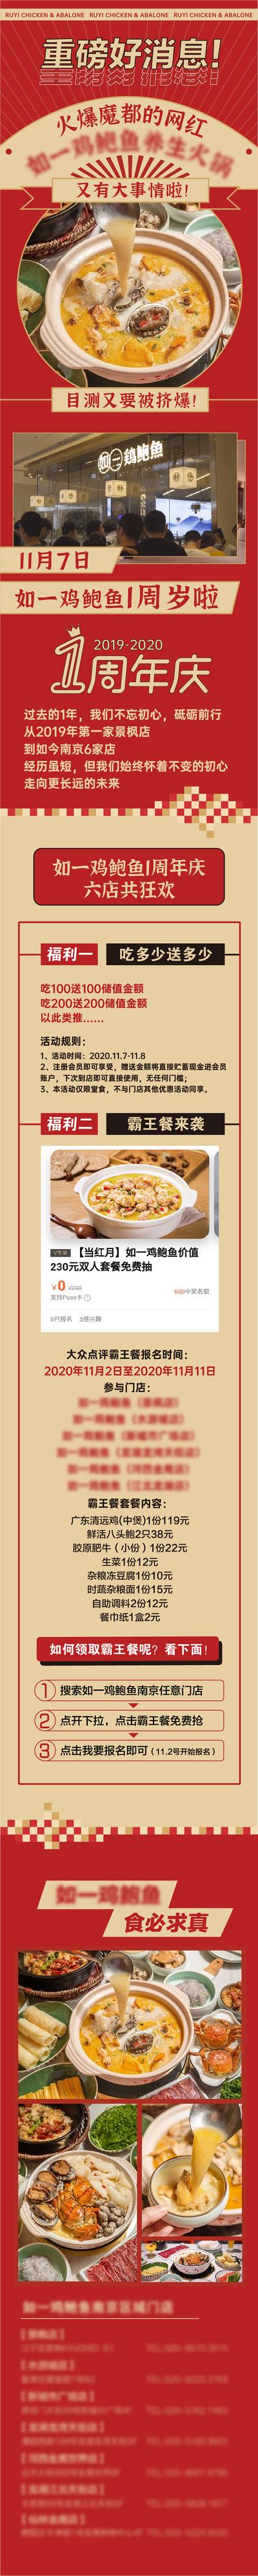 南门网 专题设计 长图 餐饮 美食 周年庆 鲍鱼 鱼汤 复古